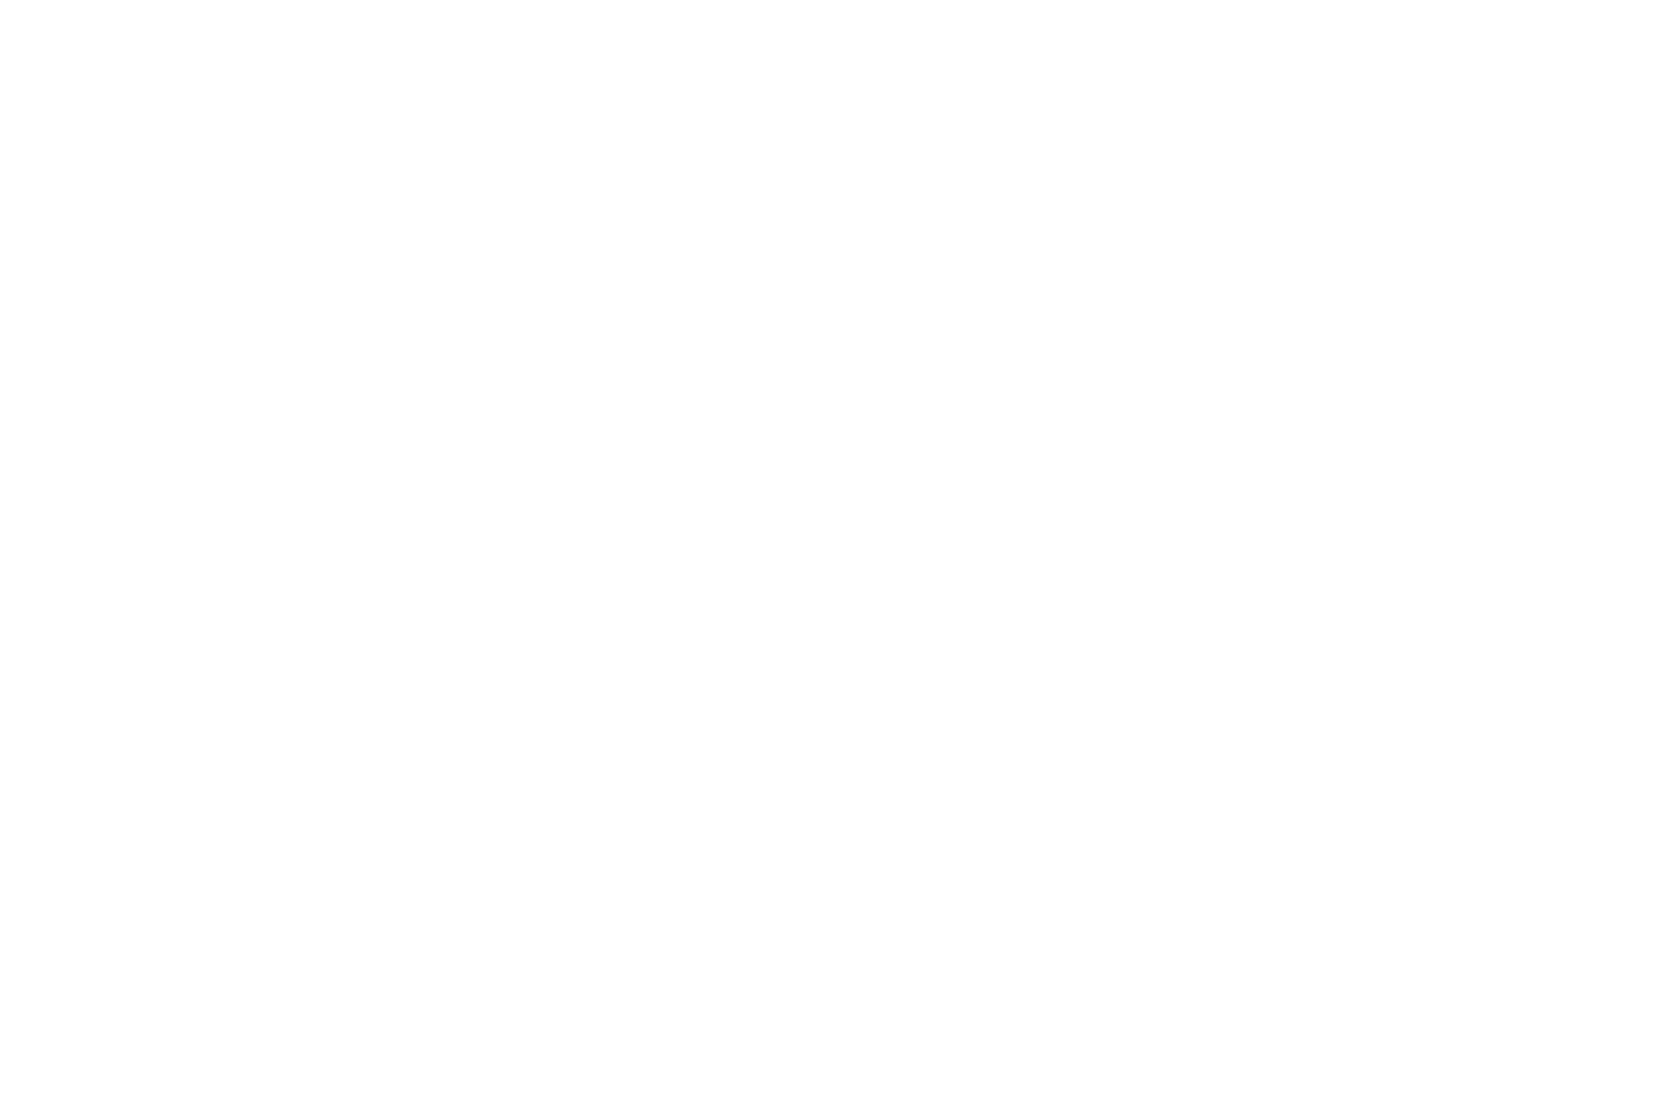 Африканские дети со свечами в Храме Воскресения, Иерусалим, схождение Благодатного Огня. фотограф Москва. Георгий Безбородов, художественный репортаж, фотограф Анталия, фотосессия в анталии